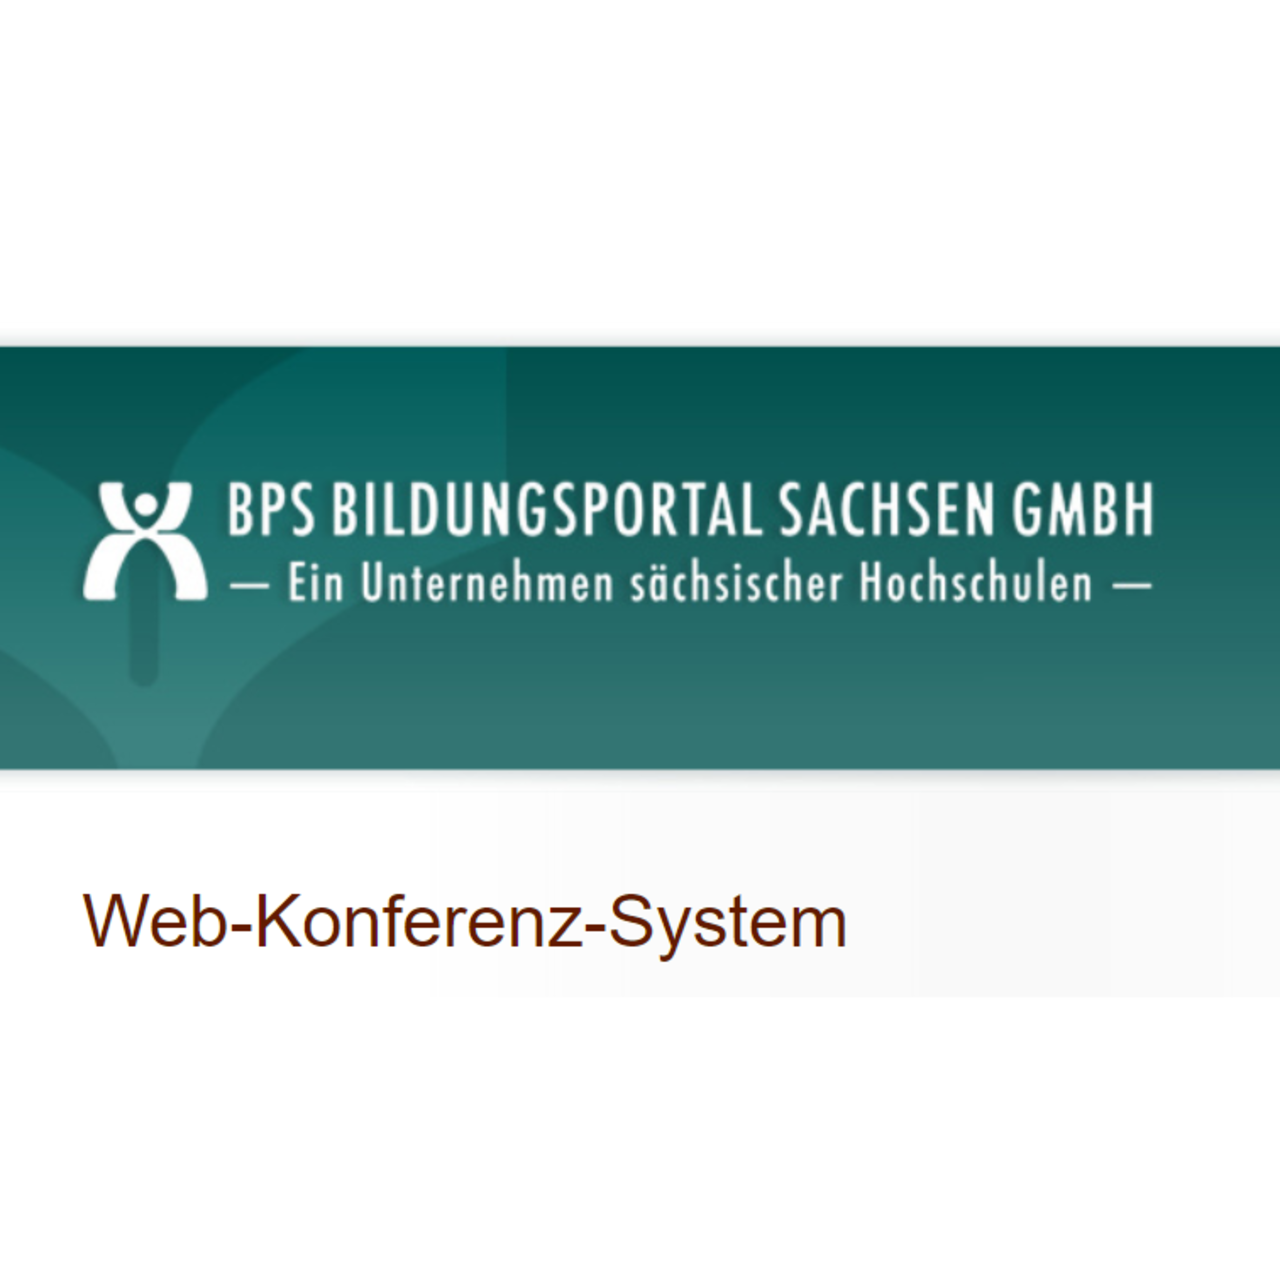 BPS Bildungsportal Sachsen GmbH - Ein Unternehmen sächsischer Hochschulen